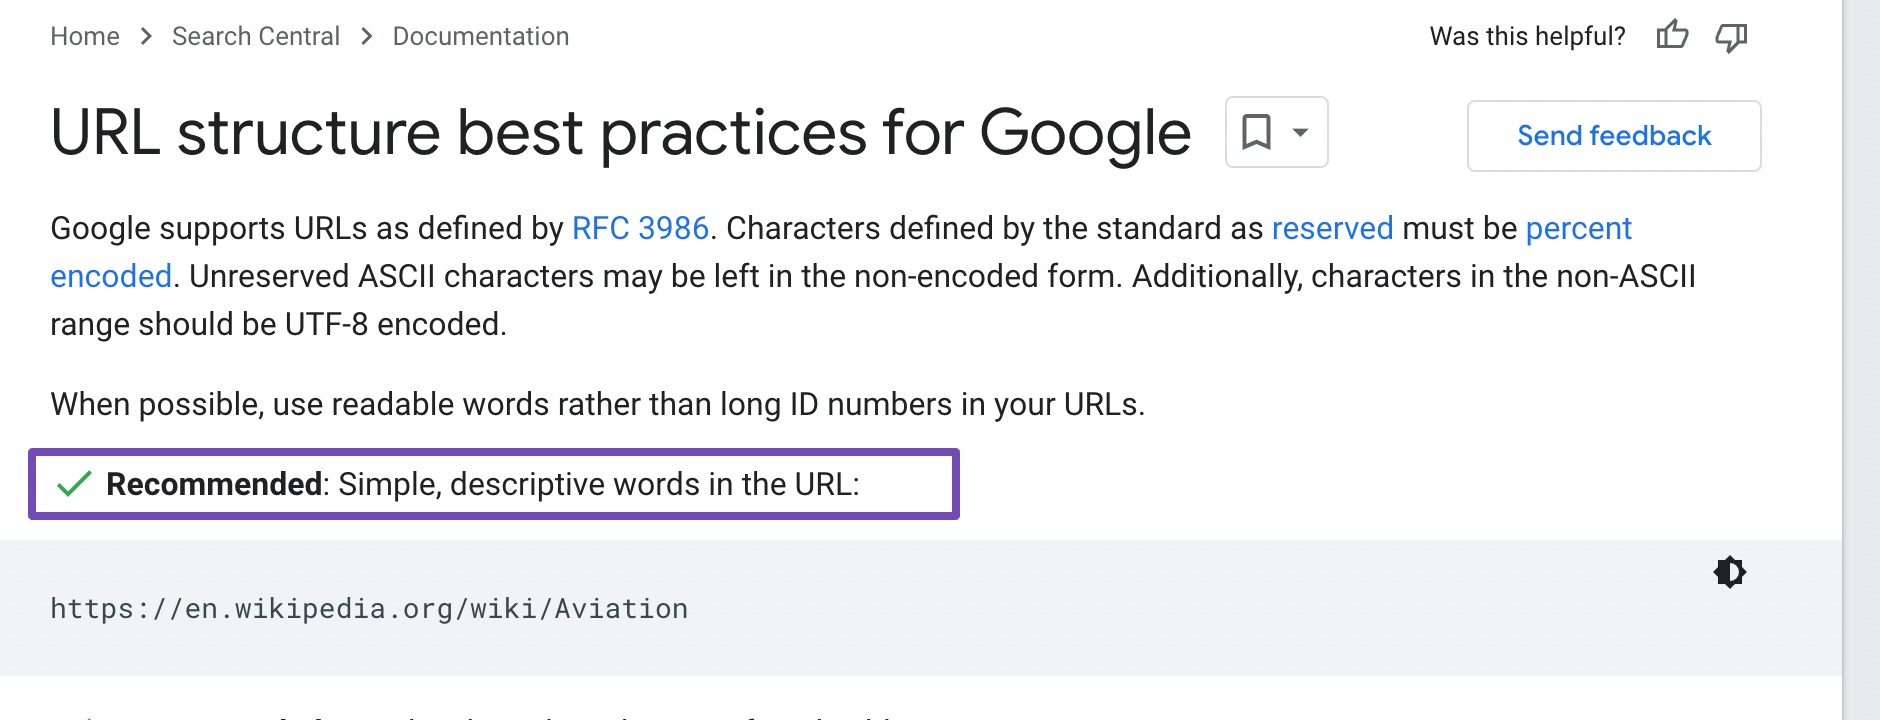 Wytyczne Google dotyczące struktury adresów URL